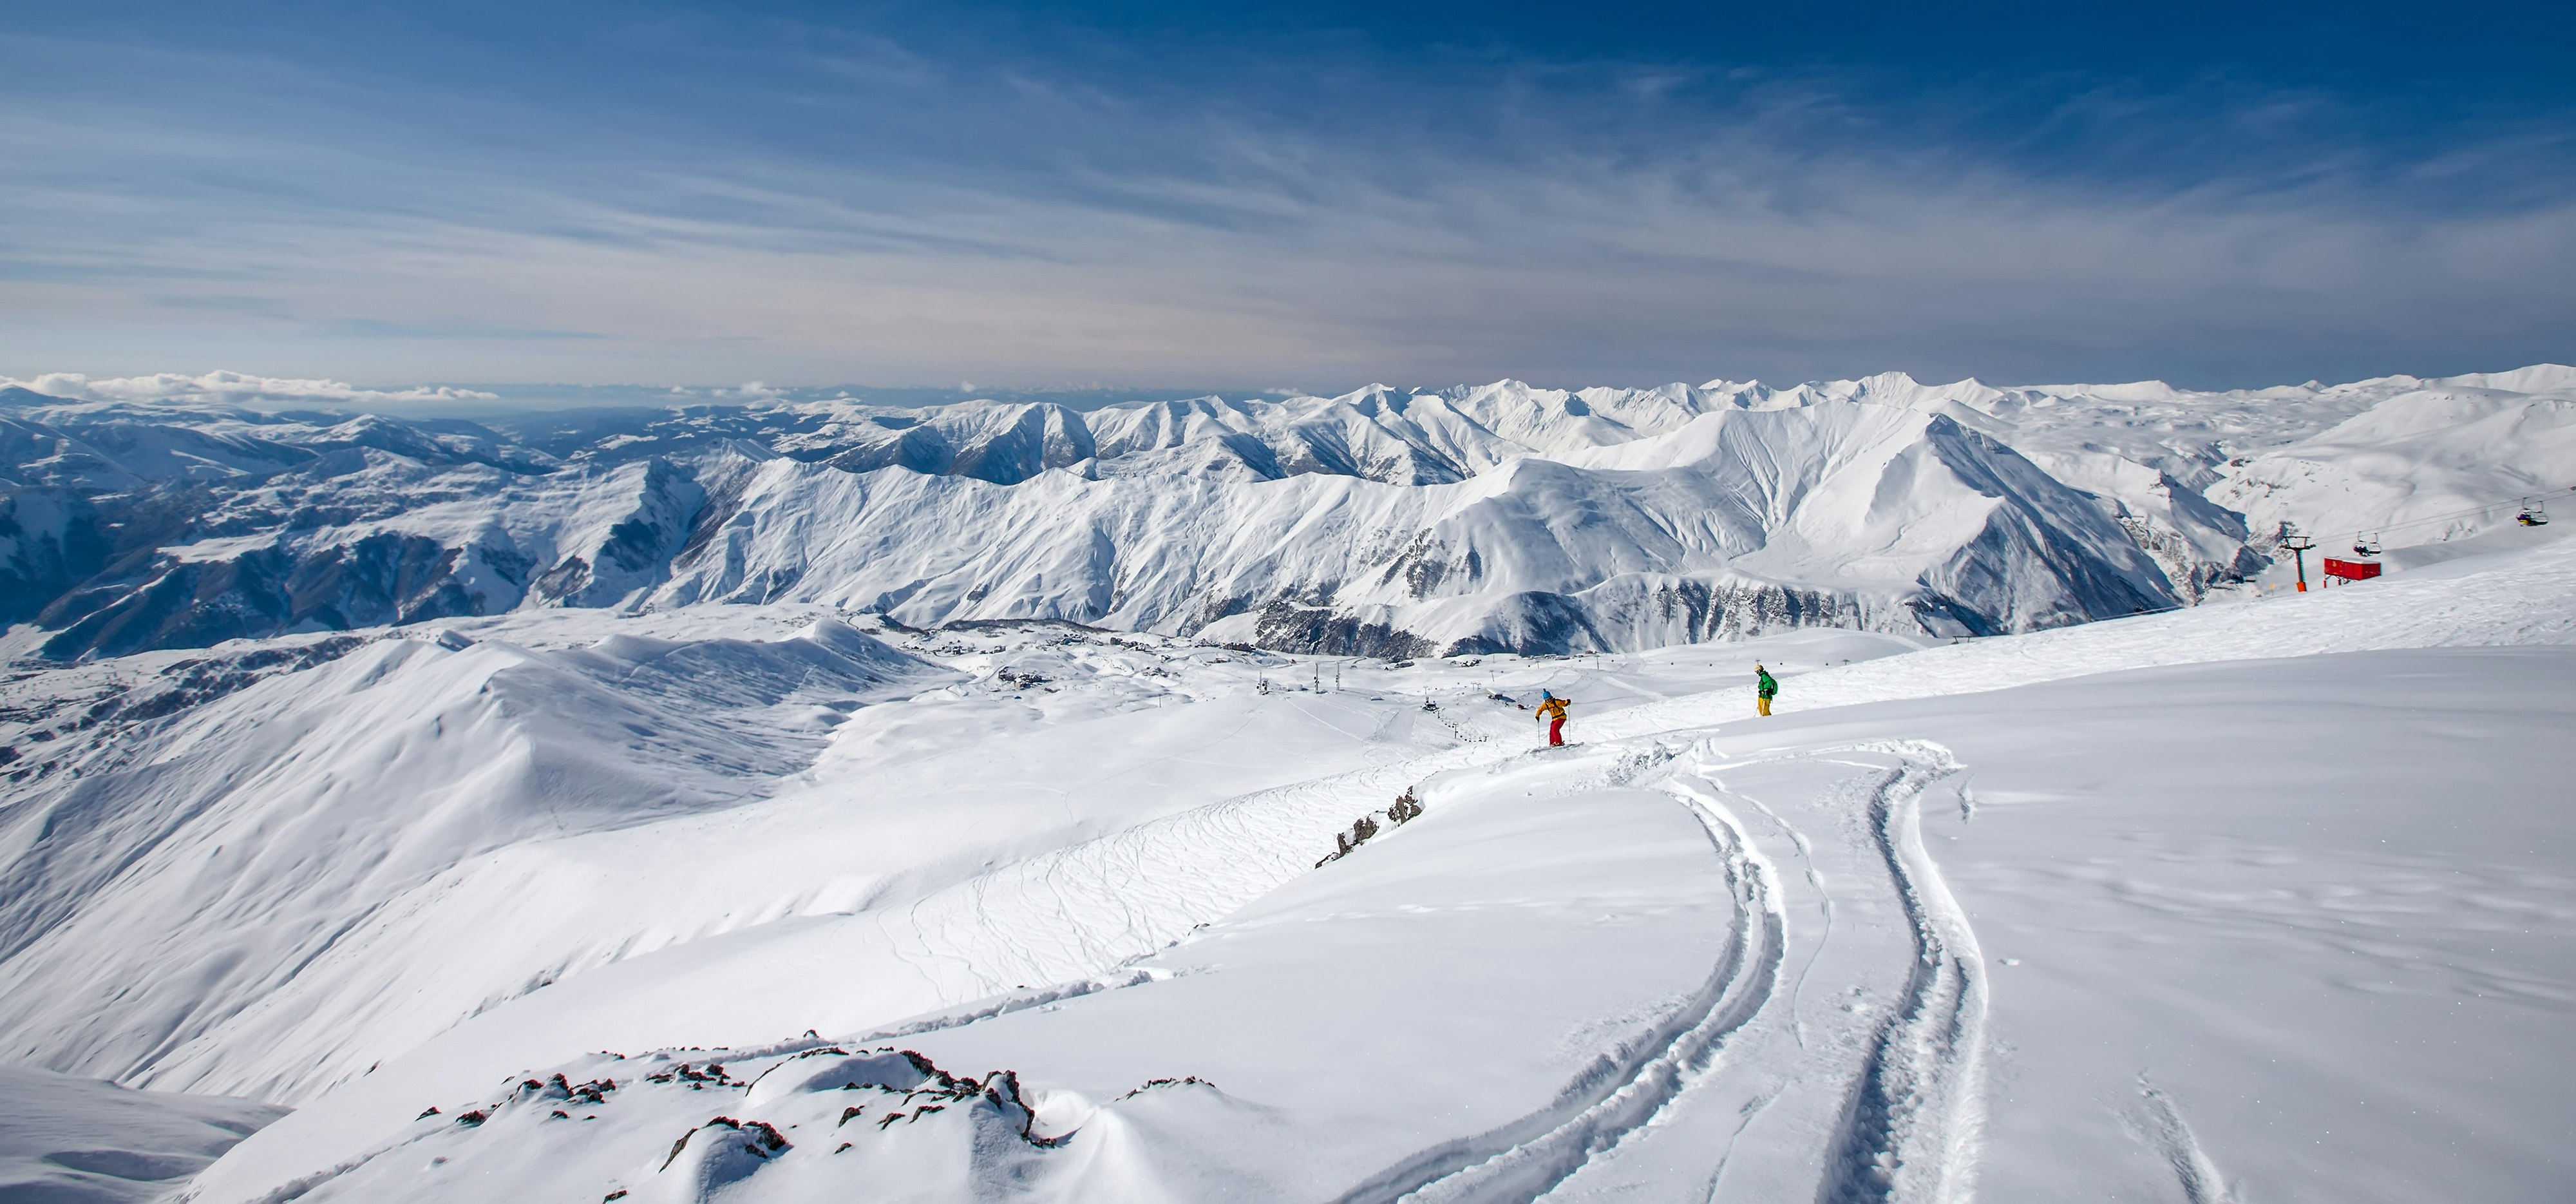 Features - Beautiful landscape of Caucasus mountains, Gudauri ski resort, Georgia